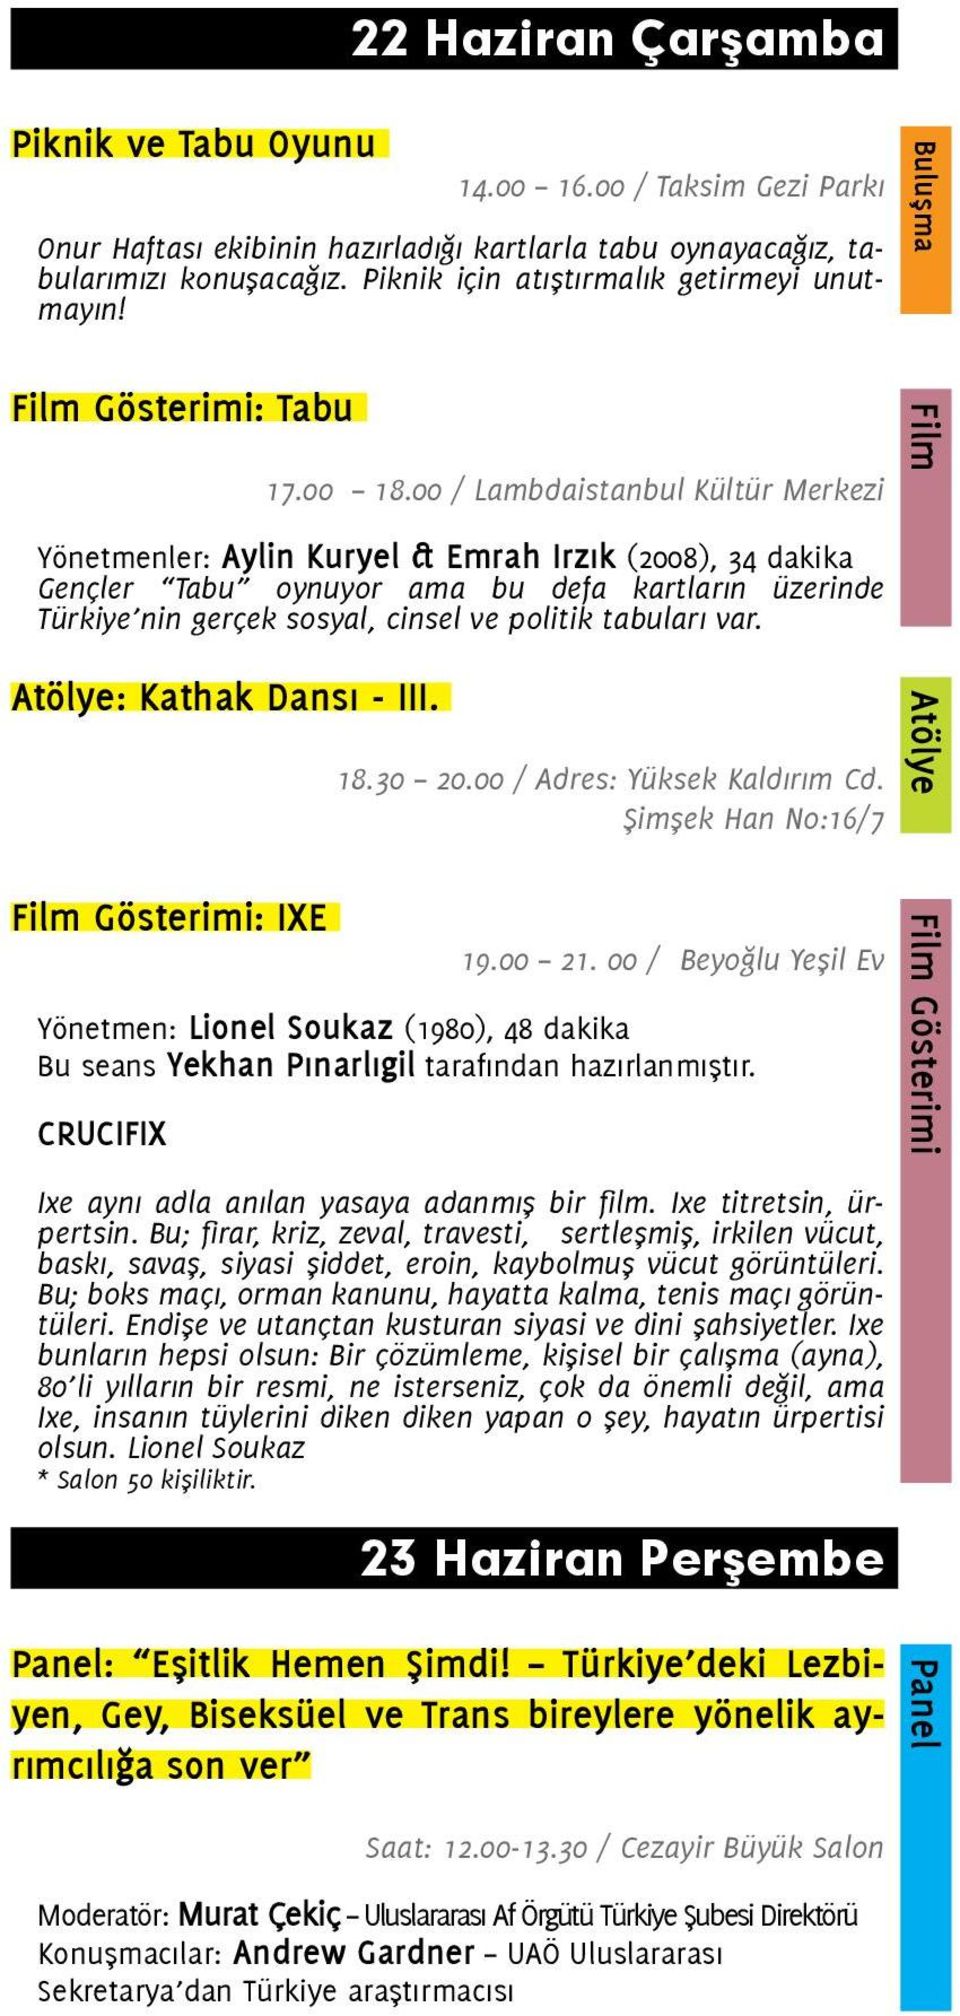 00 / Lambdaistanbul Kültür Merkezi Yönetmenler: Aylin Kuryel & Emrah Irzık (2008), 34 dakika Gençler Tabu oynuyor ama bu defa kartların üzerinde Türkiye nin gerçek sosyal, cinsel ve politik tabuları